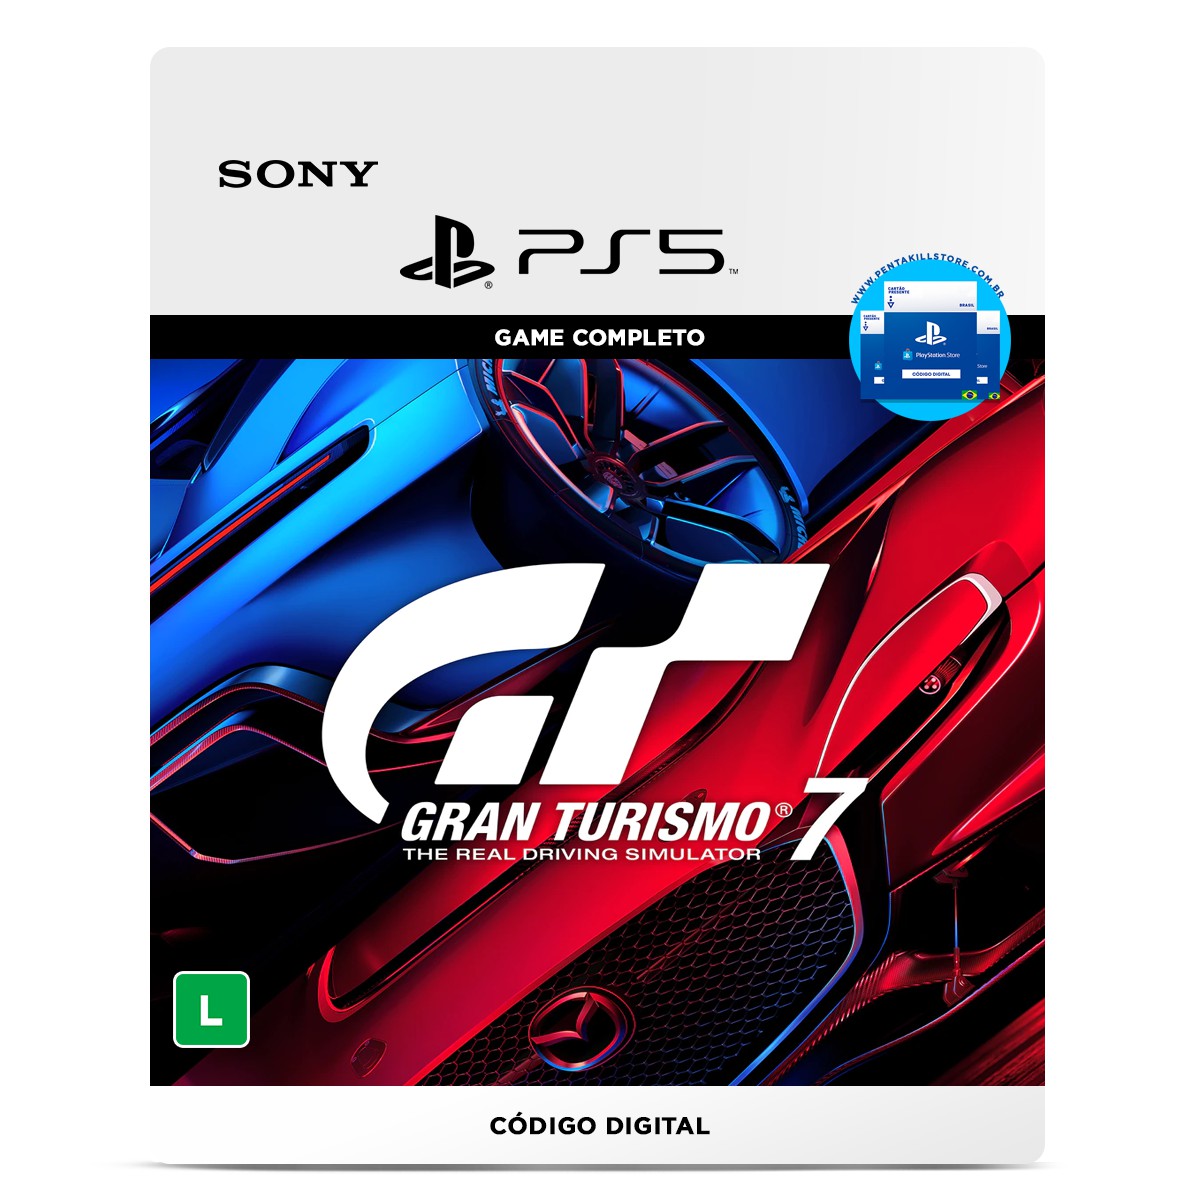 Gran Turismo 7 PS4 Mídia Digital - Venger Games  Seu centro de Cartões  presentes e mídia digital